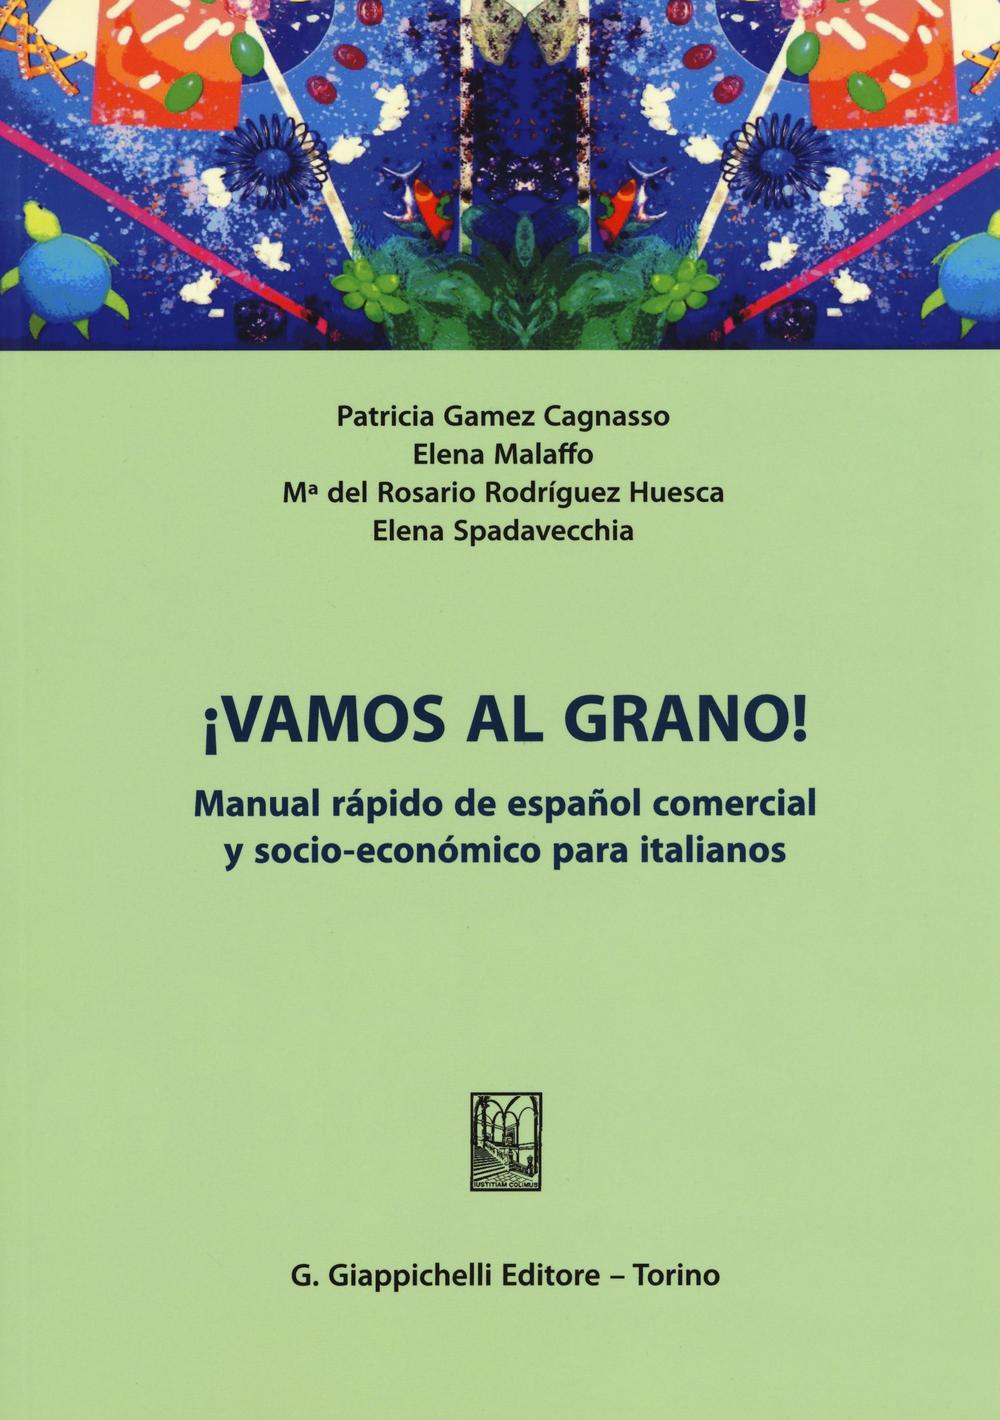 ¡Vamos al grano! Manual rápido de español comercial y socio-económico para italianos